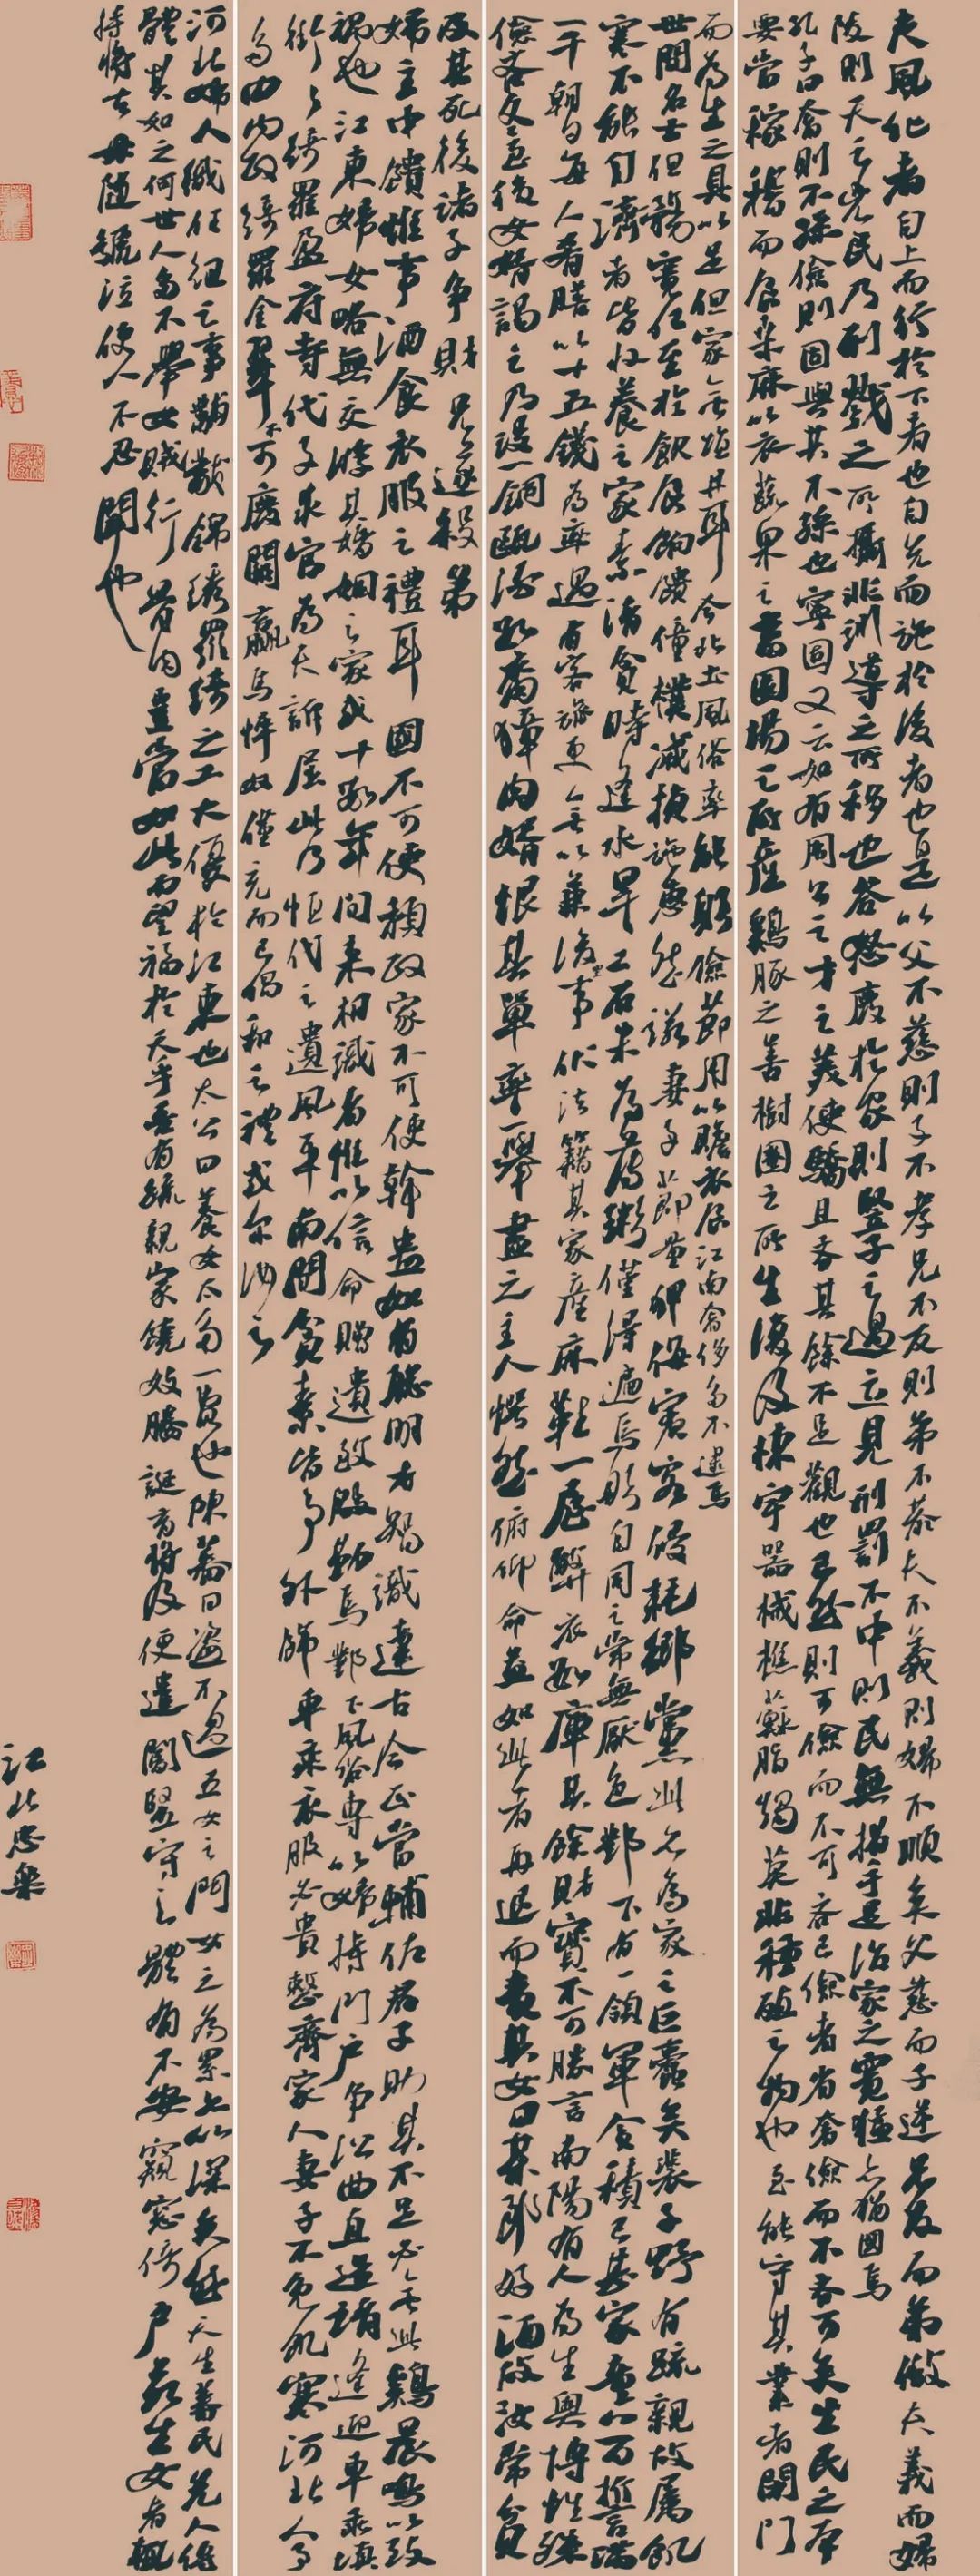 第四届安徽书法大展在合肥展出(图51)